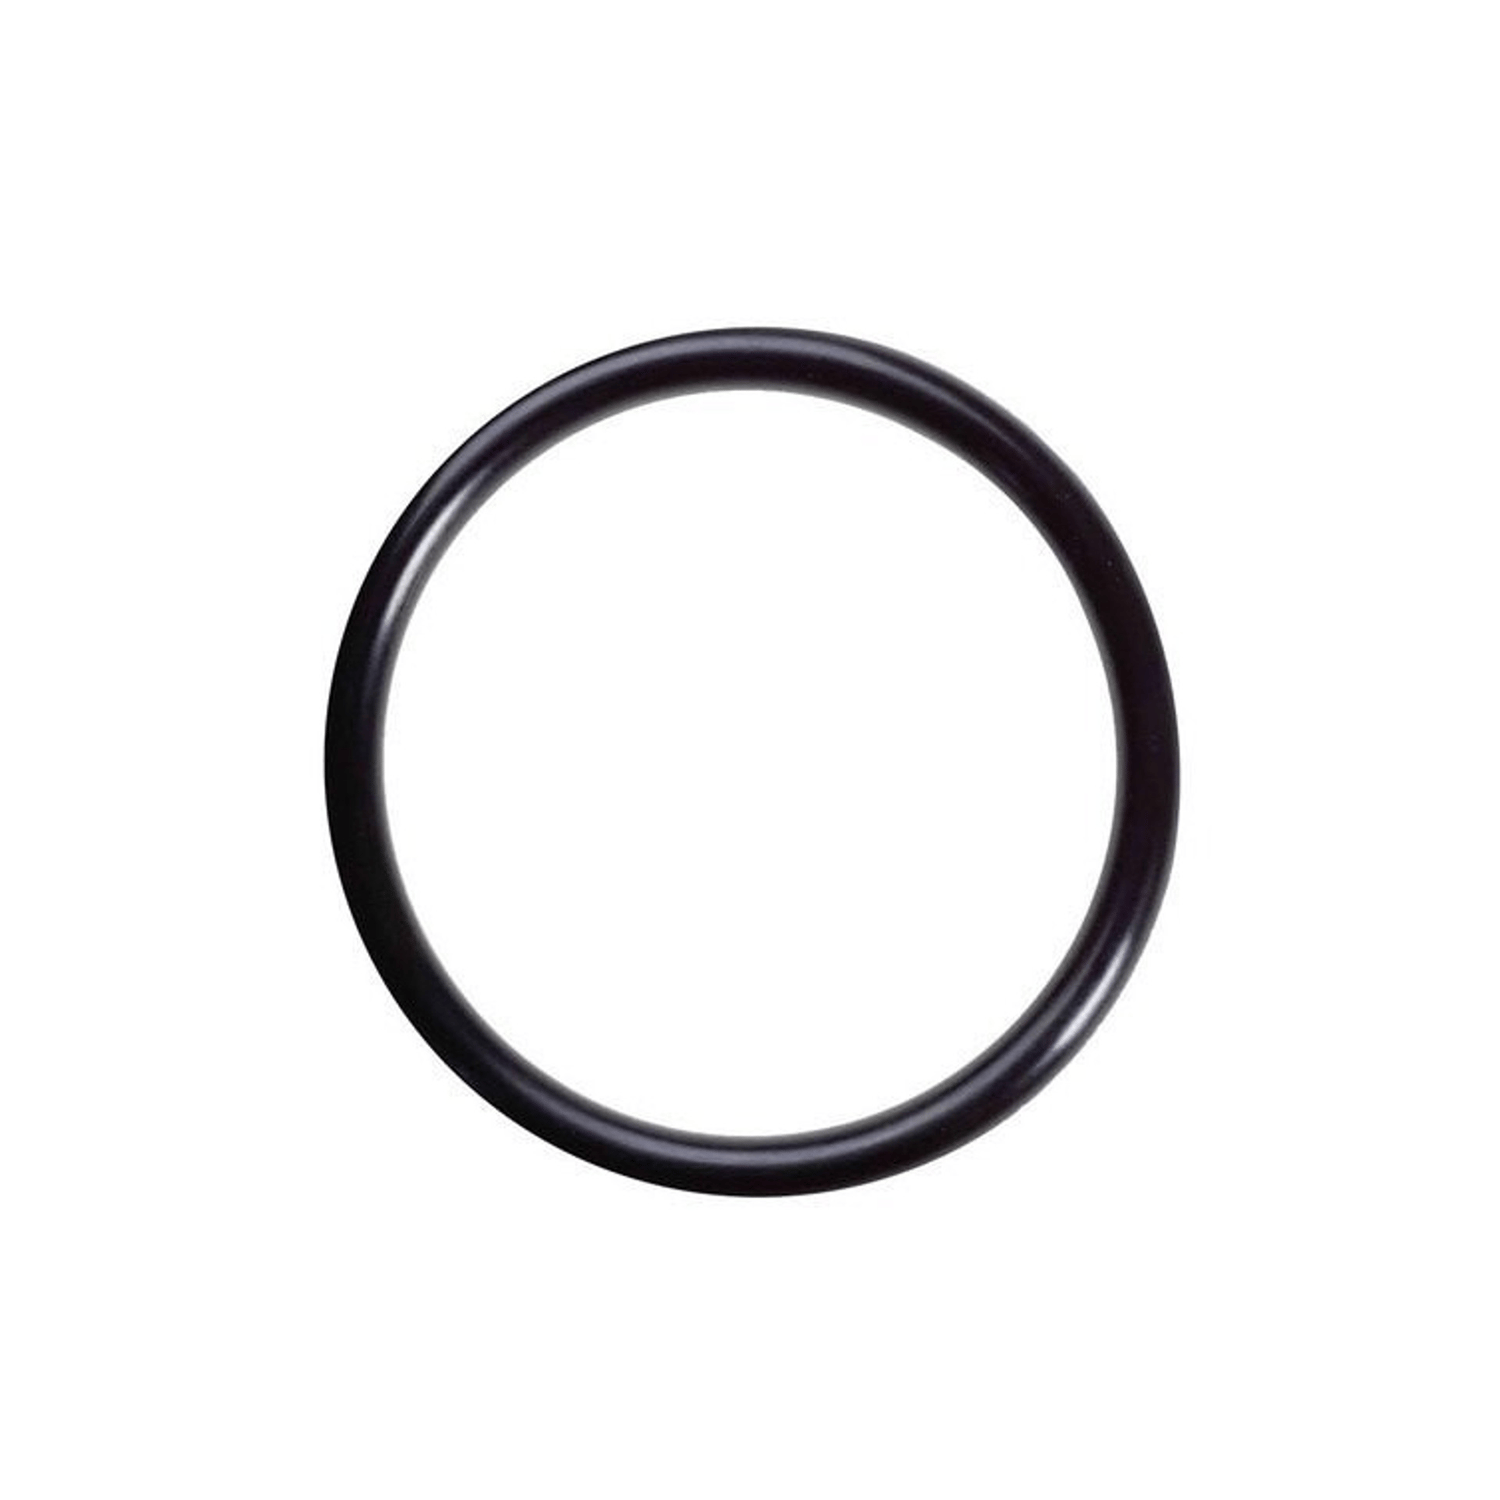 O-ringi 7.8 x 1.9 mm 1 szt. z gumy HNBR, do klimatyzatorów R12 i R134a